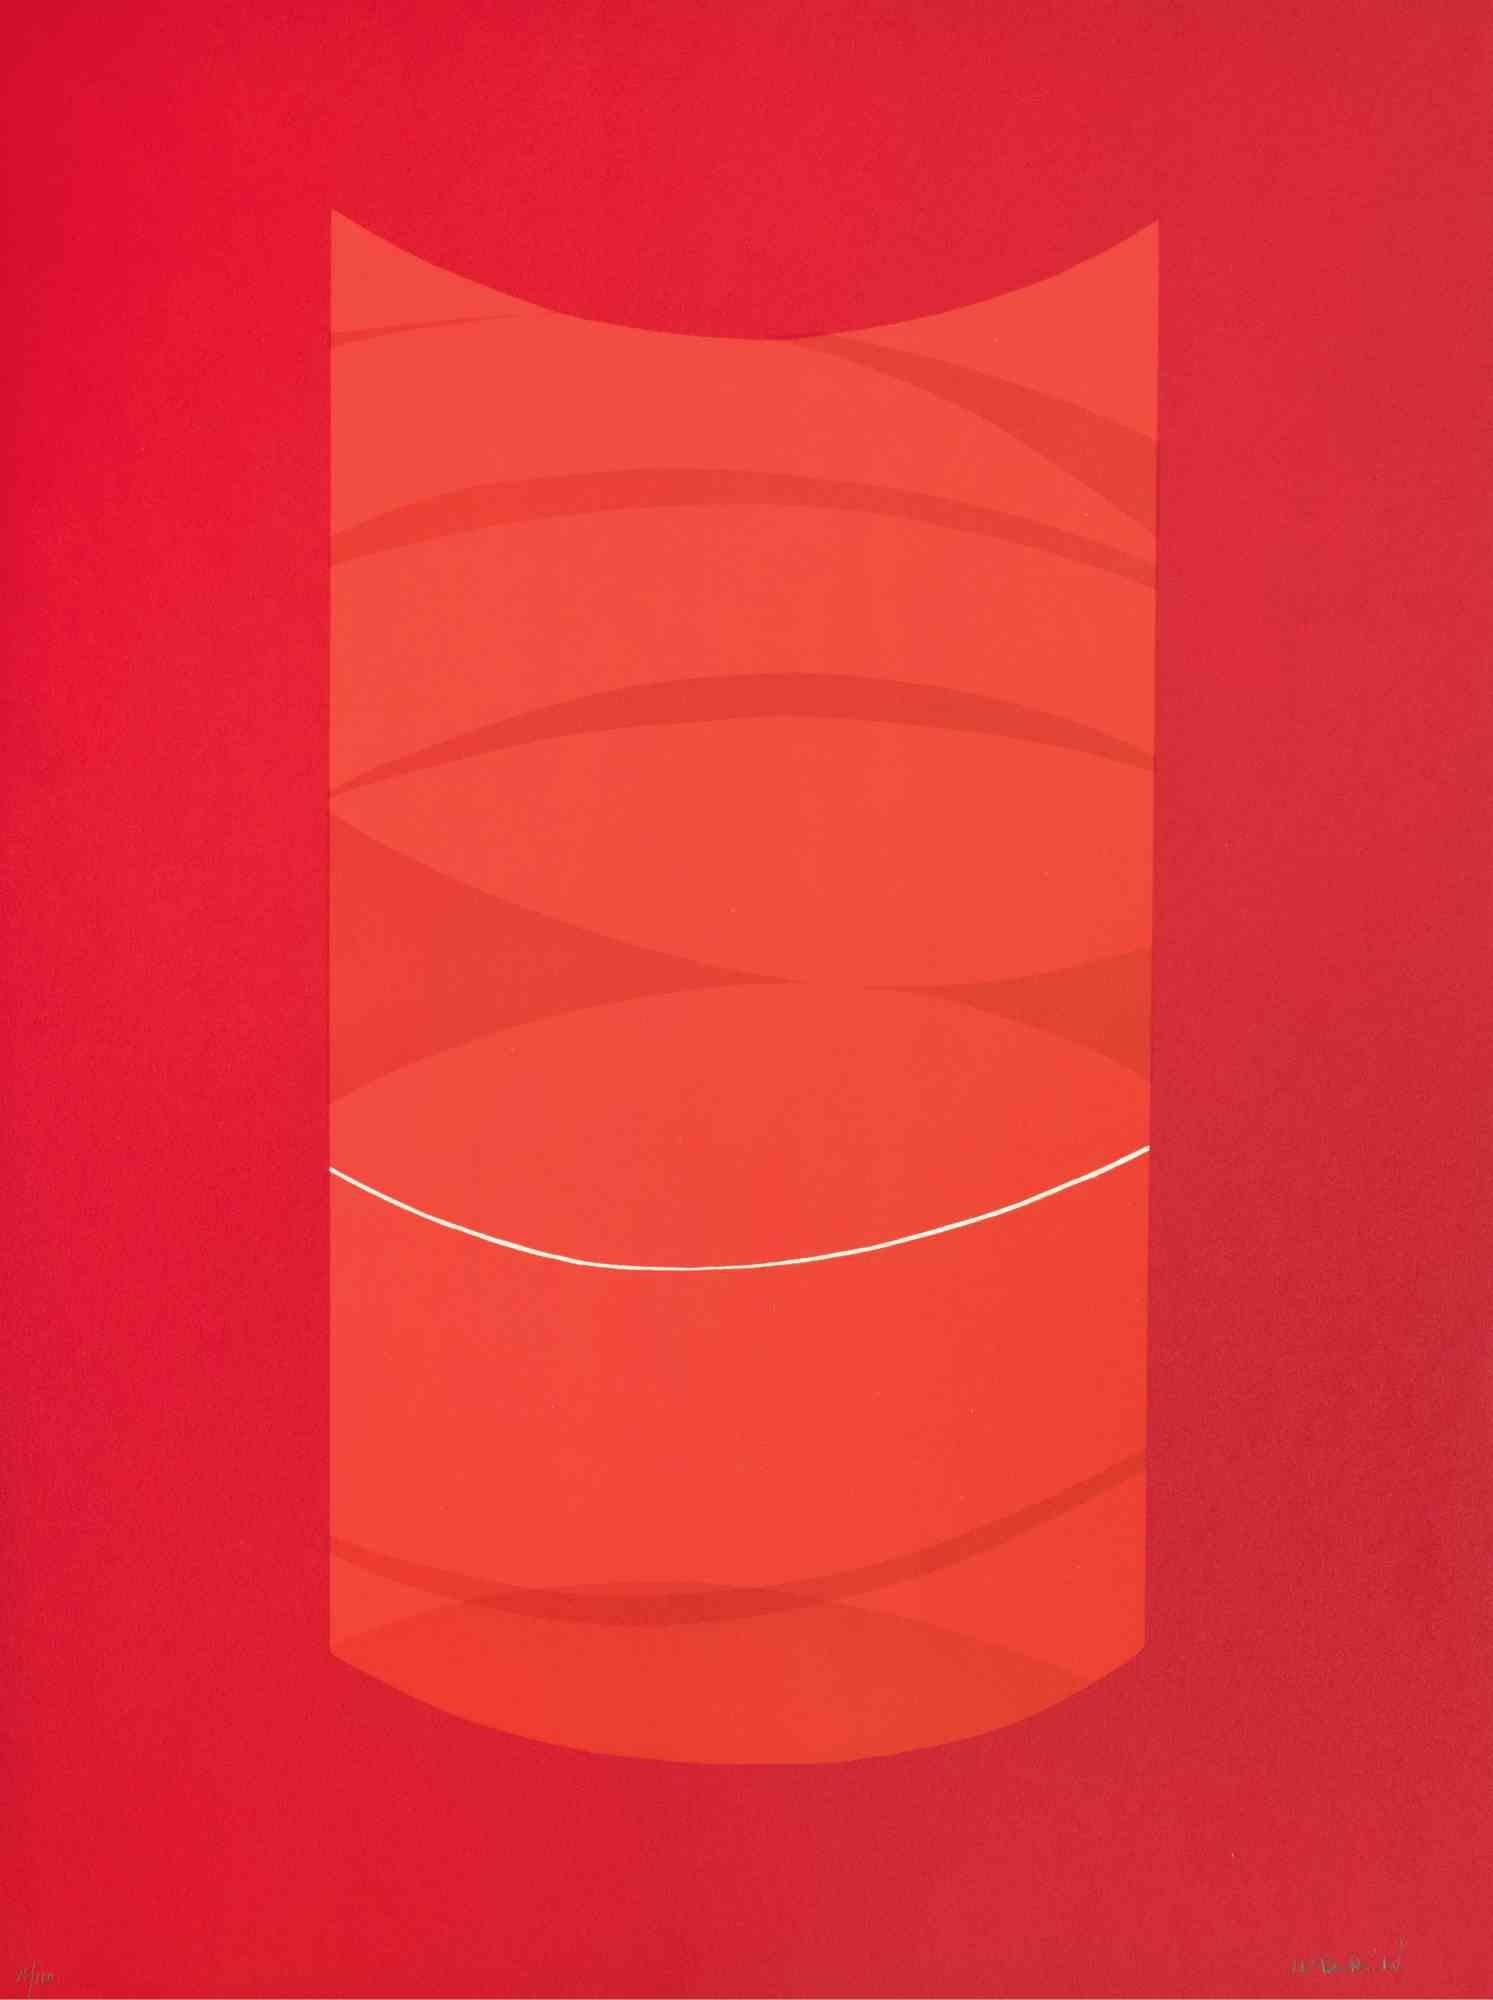 Red One ist ein zeitgenössisches Kunstwerk von Lorenzo Indrimi aus den 1970er Jahren.

Gemischtfarbige Lithographie.

Am unteren Rand handsigniert und datiert.

Auflage von 85/100. 